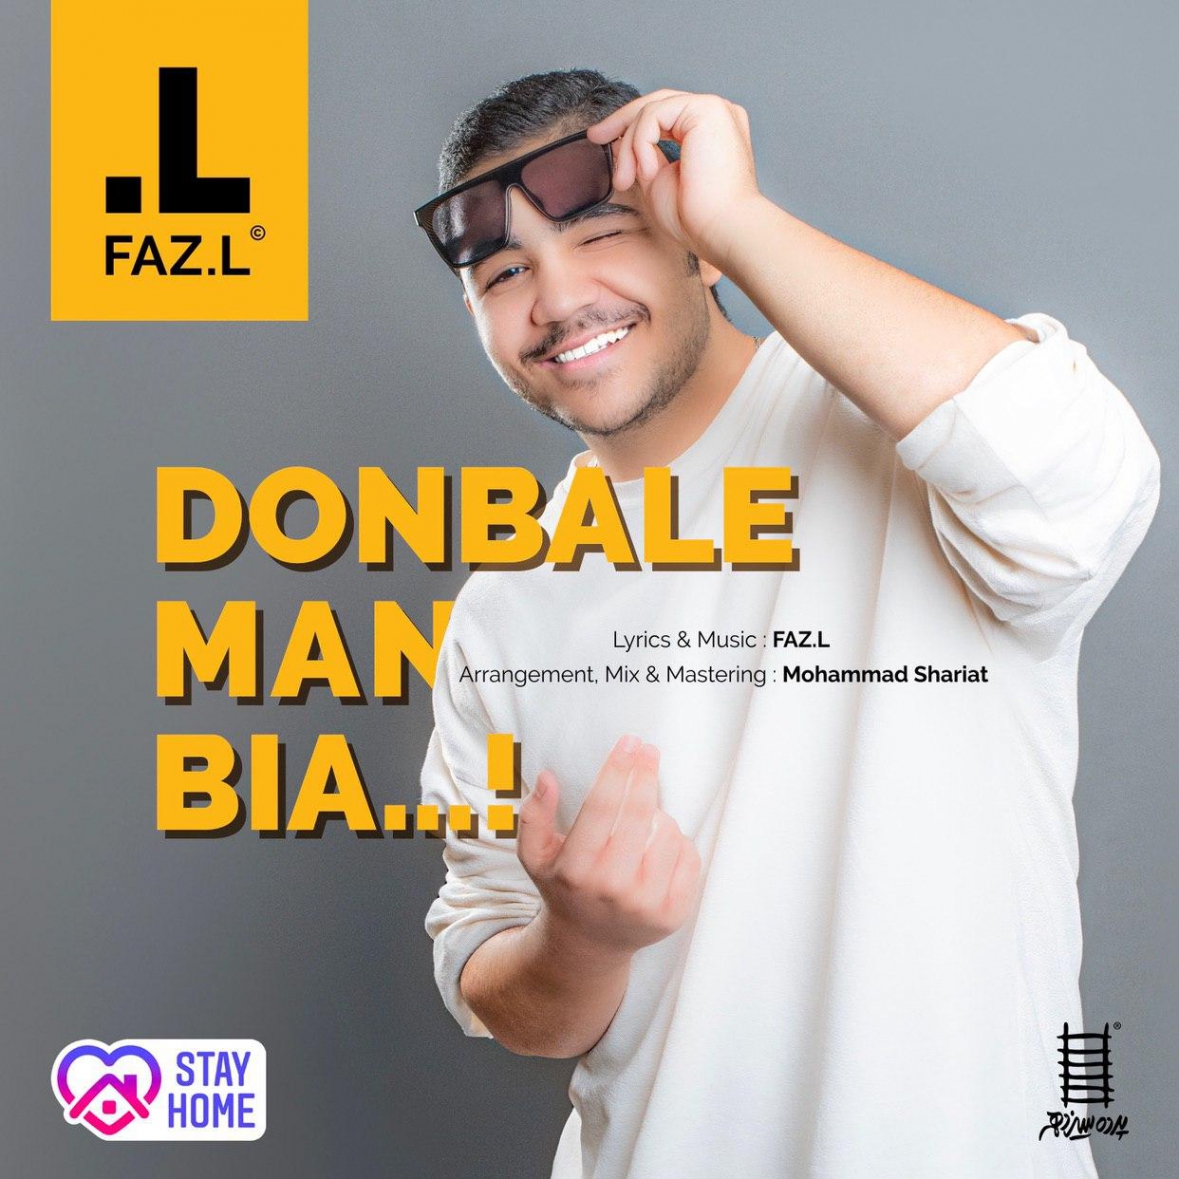 دانلود فازل - ریمیکس جدید دنبال من بیا Fazel - Donbale Man Bia New Remix